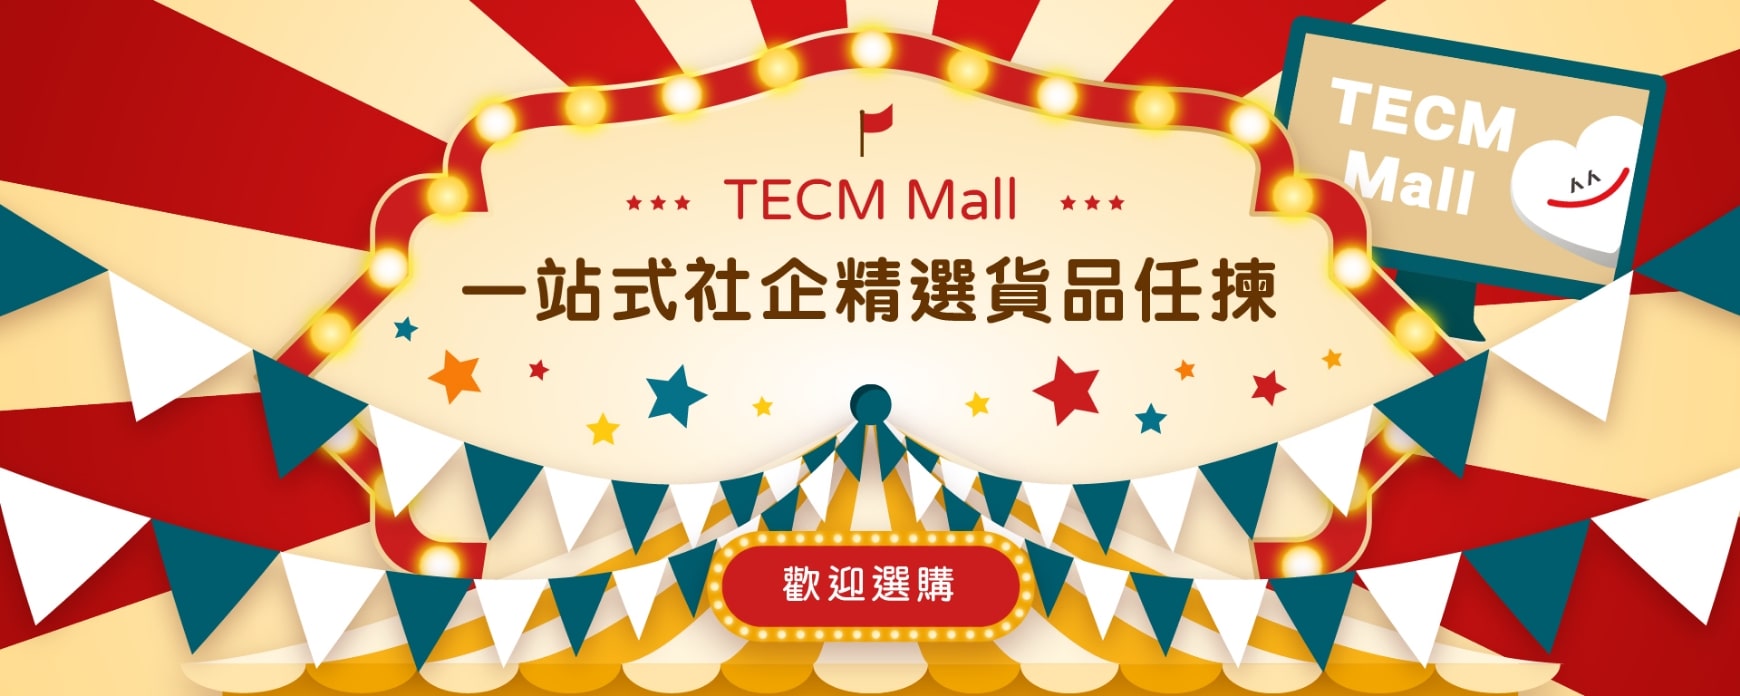 TECM Mall 一站式社企精選貨品